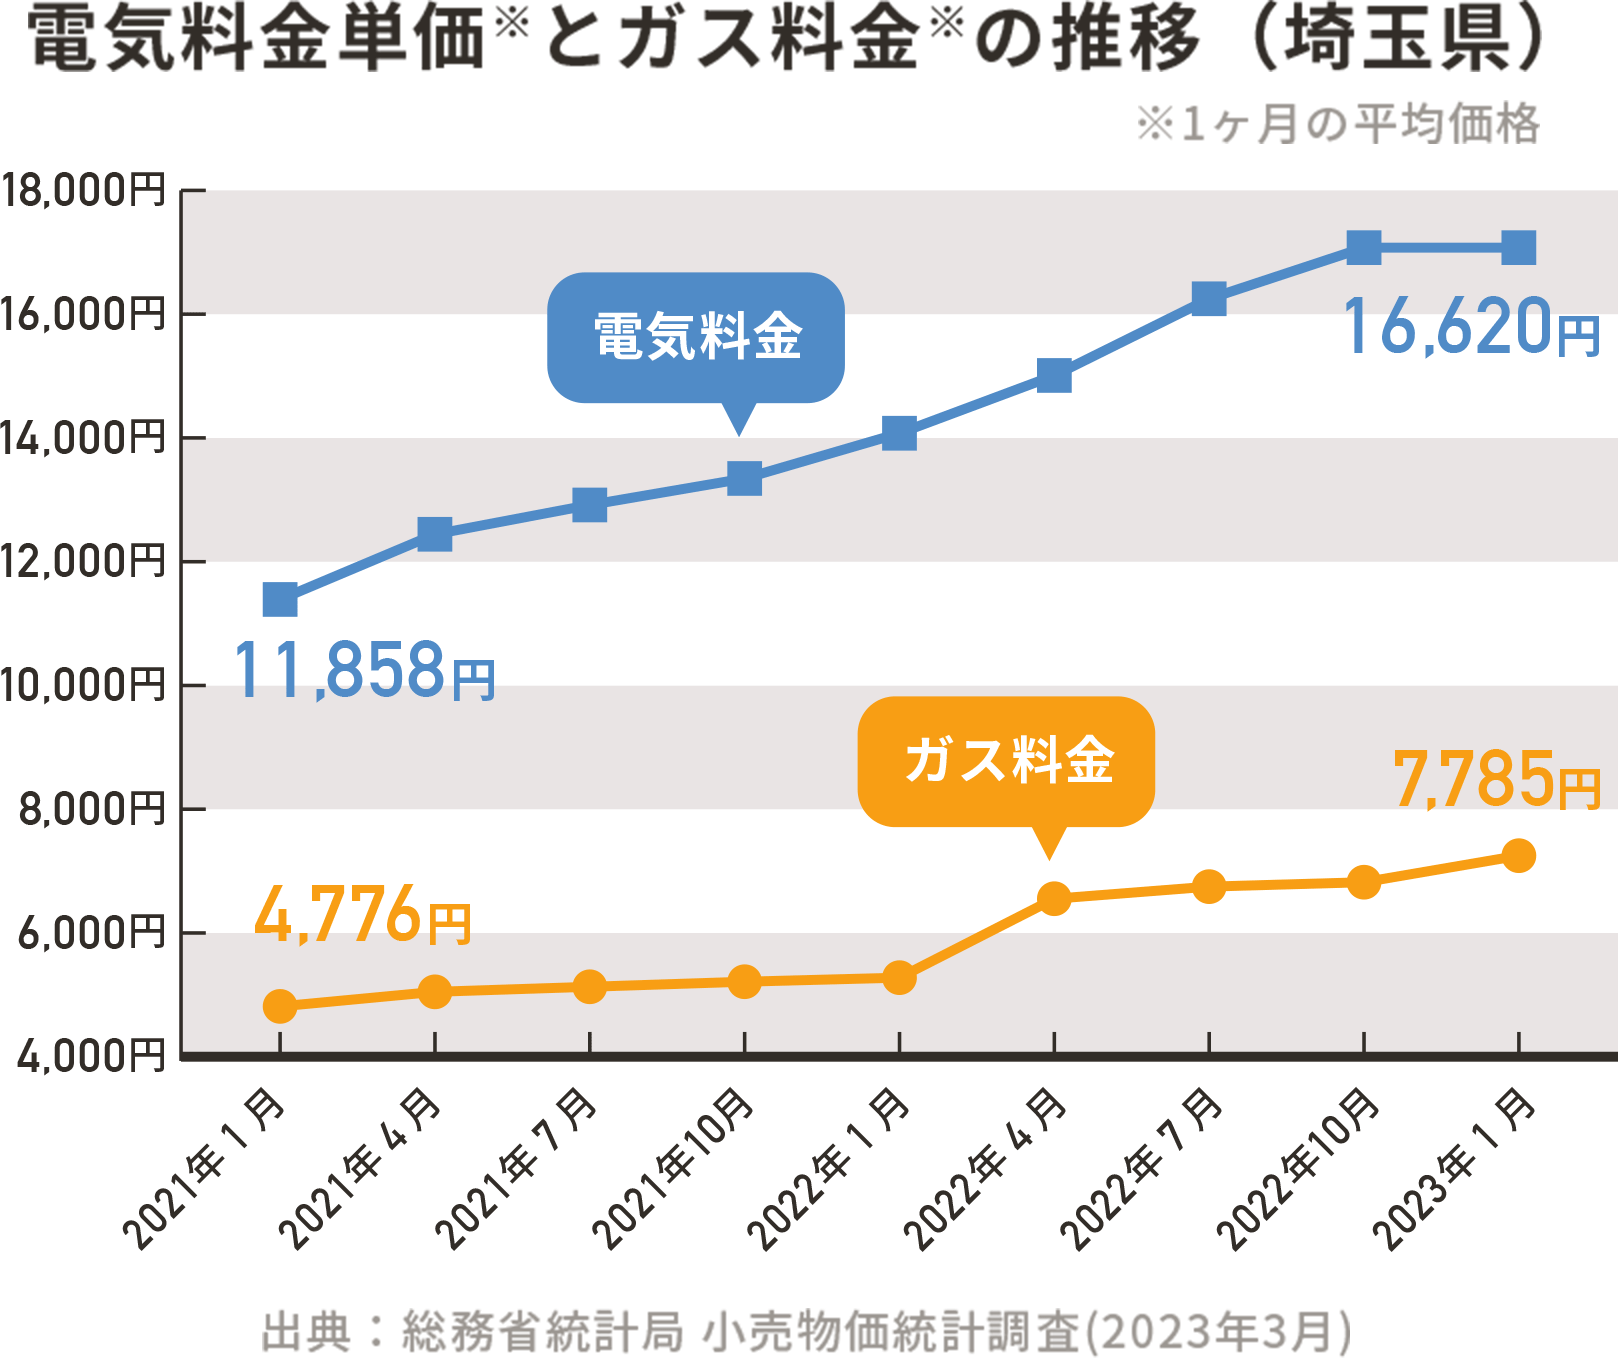 電気料金とガス料金の推移(埼玉県)